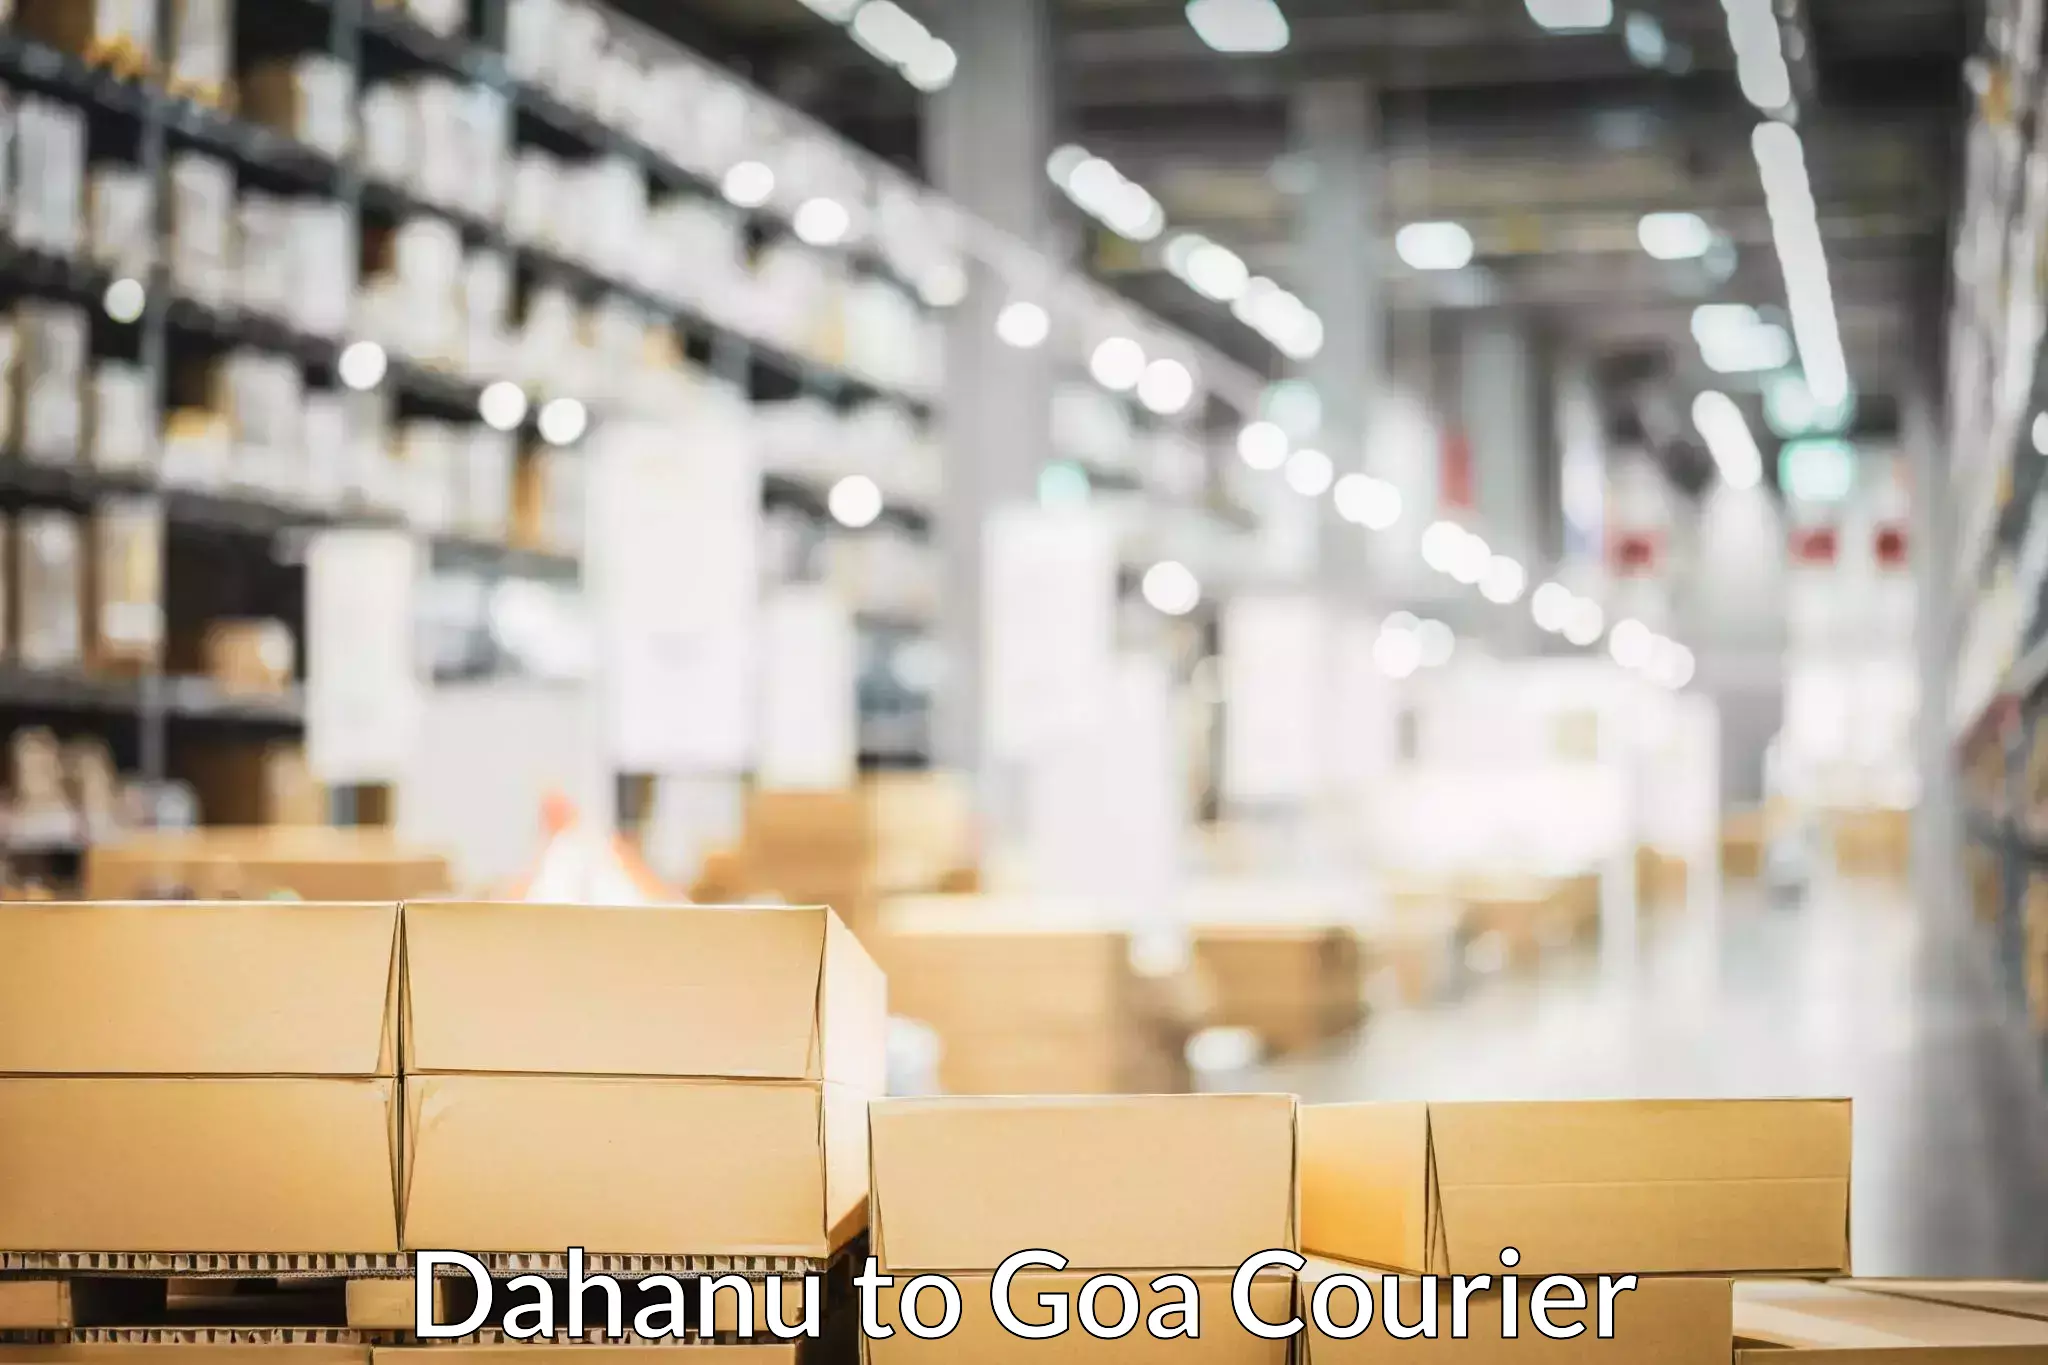 High-quality moving services Dahanu to South Goa